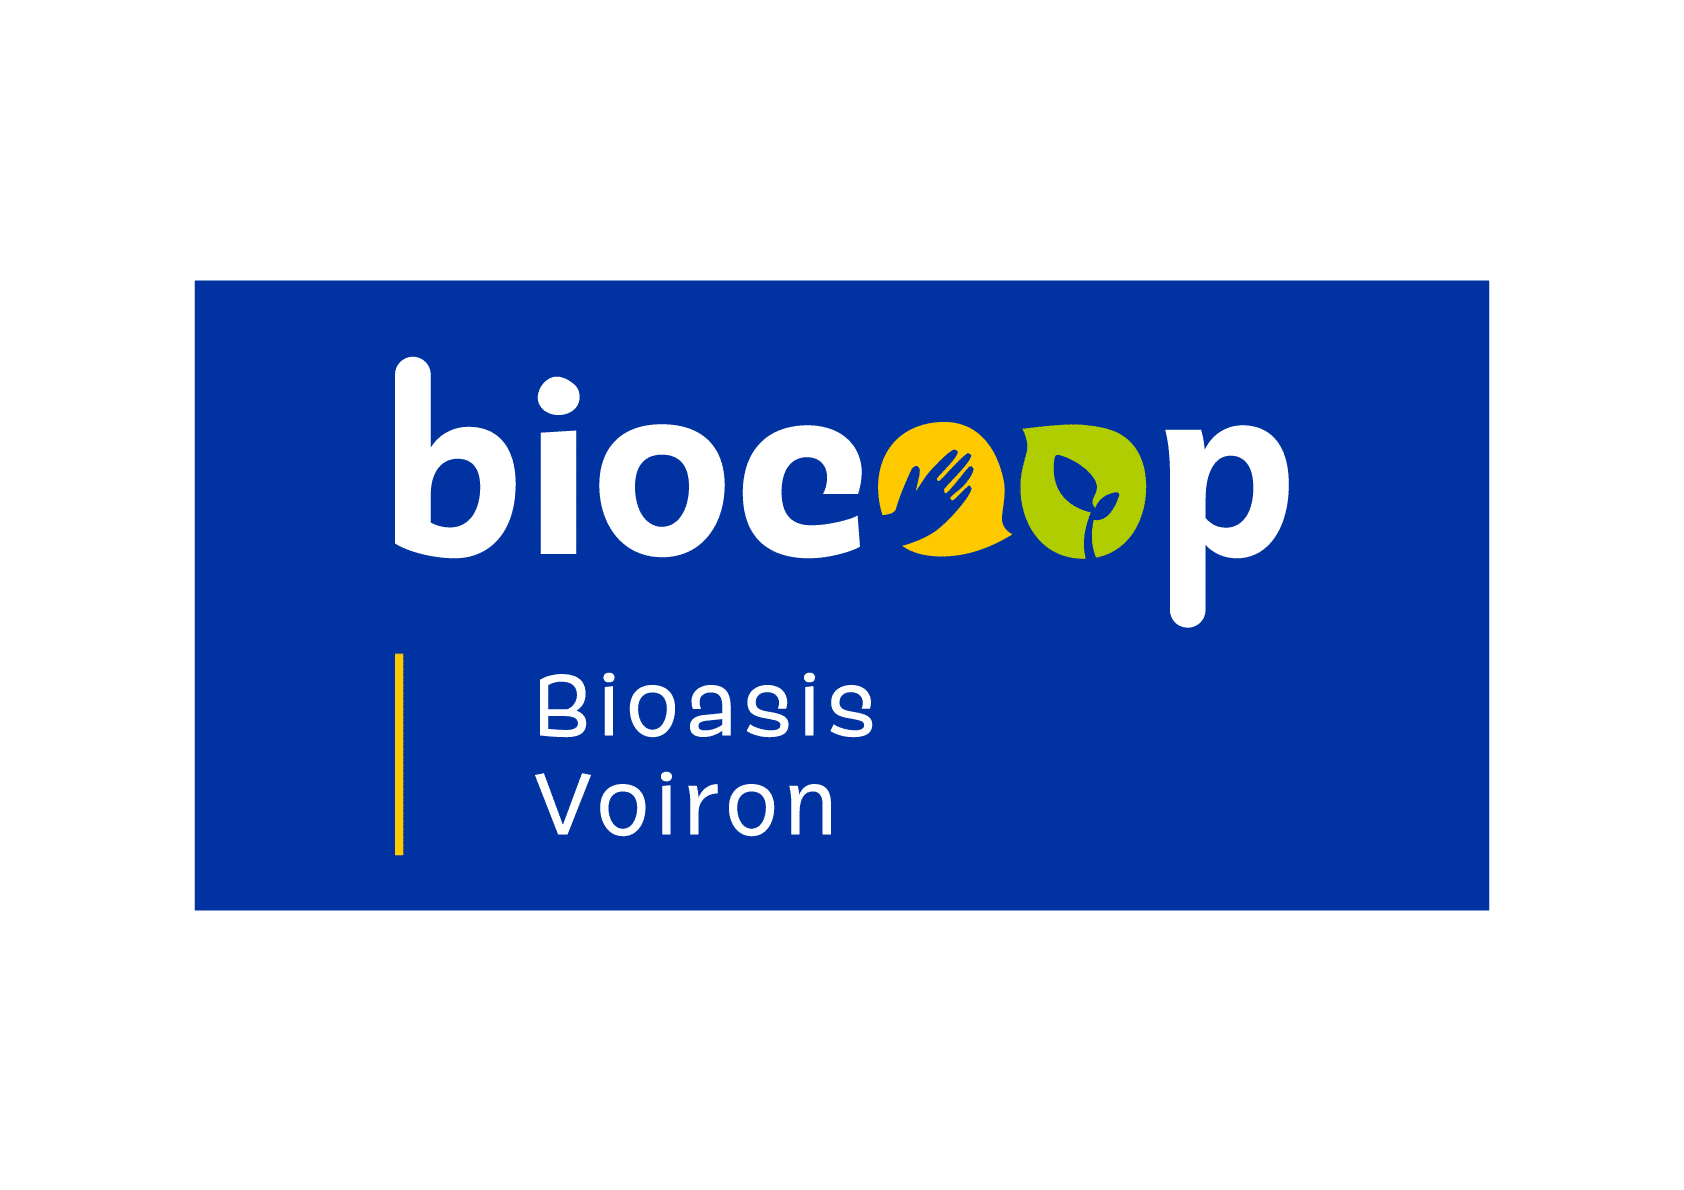 L-BIOCOOP-BIOASIS-VOIRON_standard_Ecran-RVB